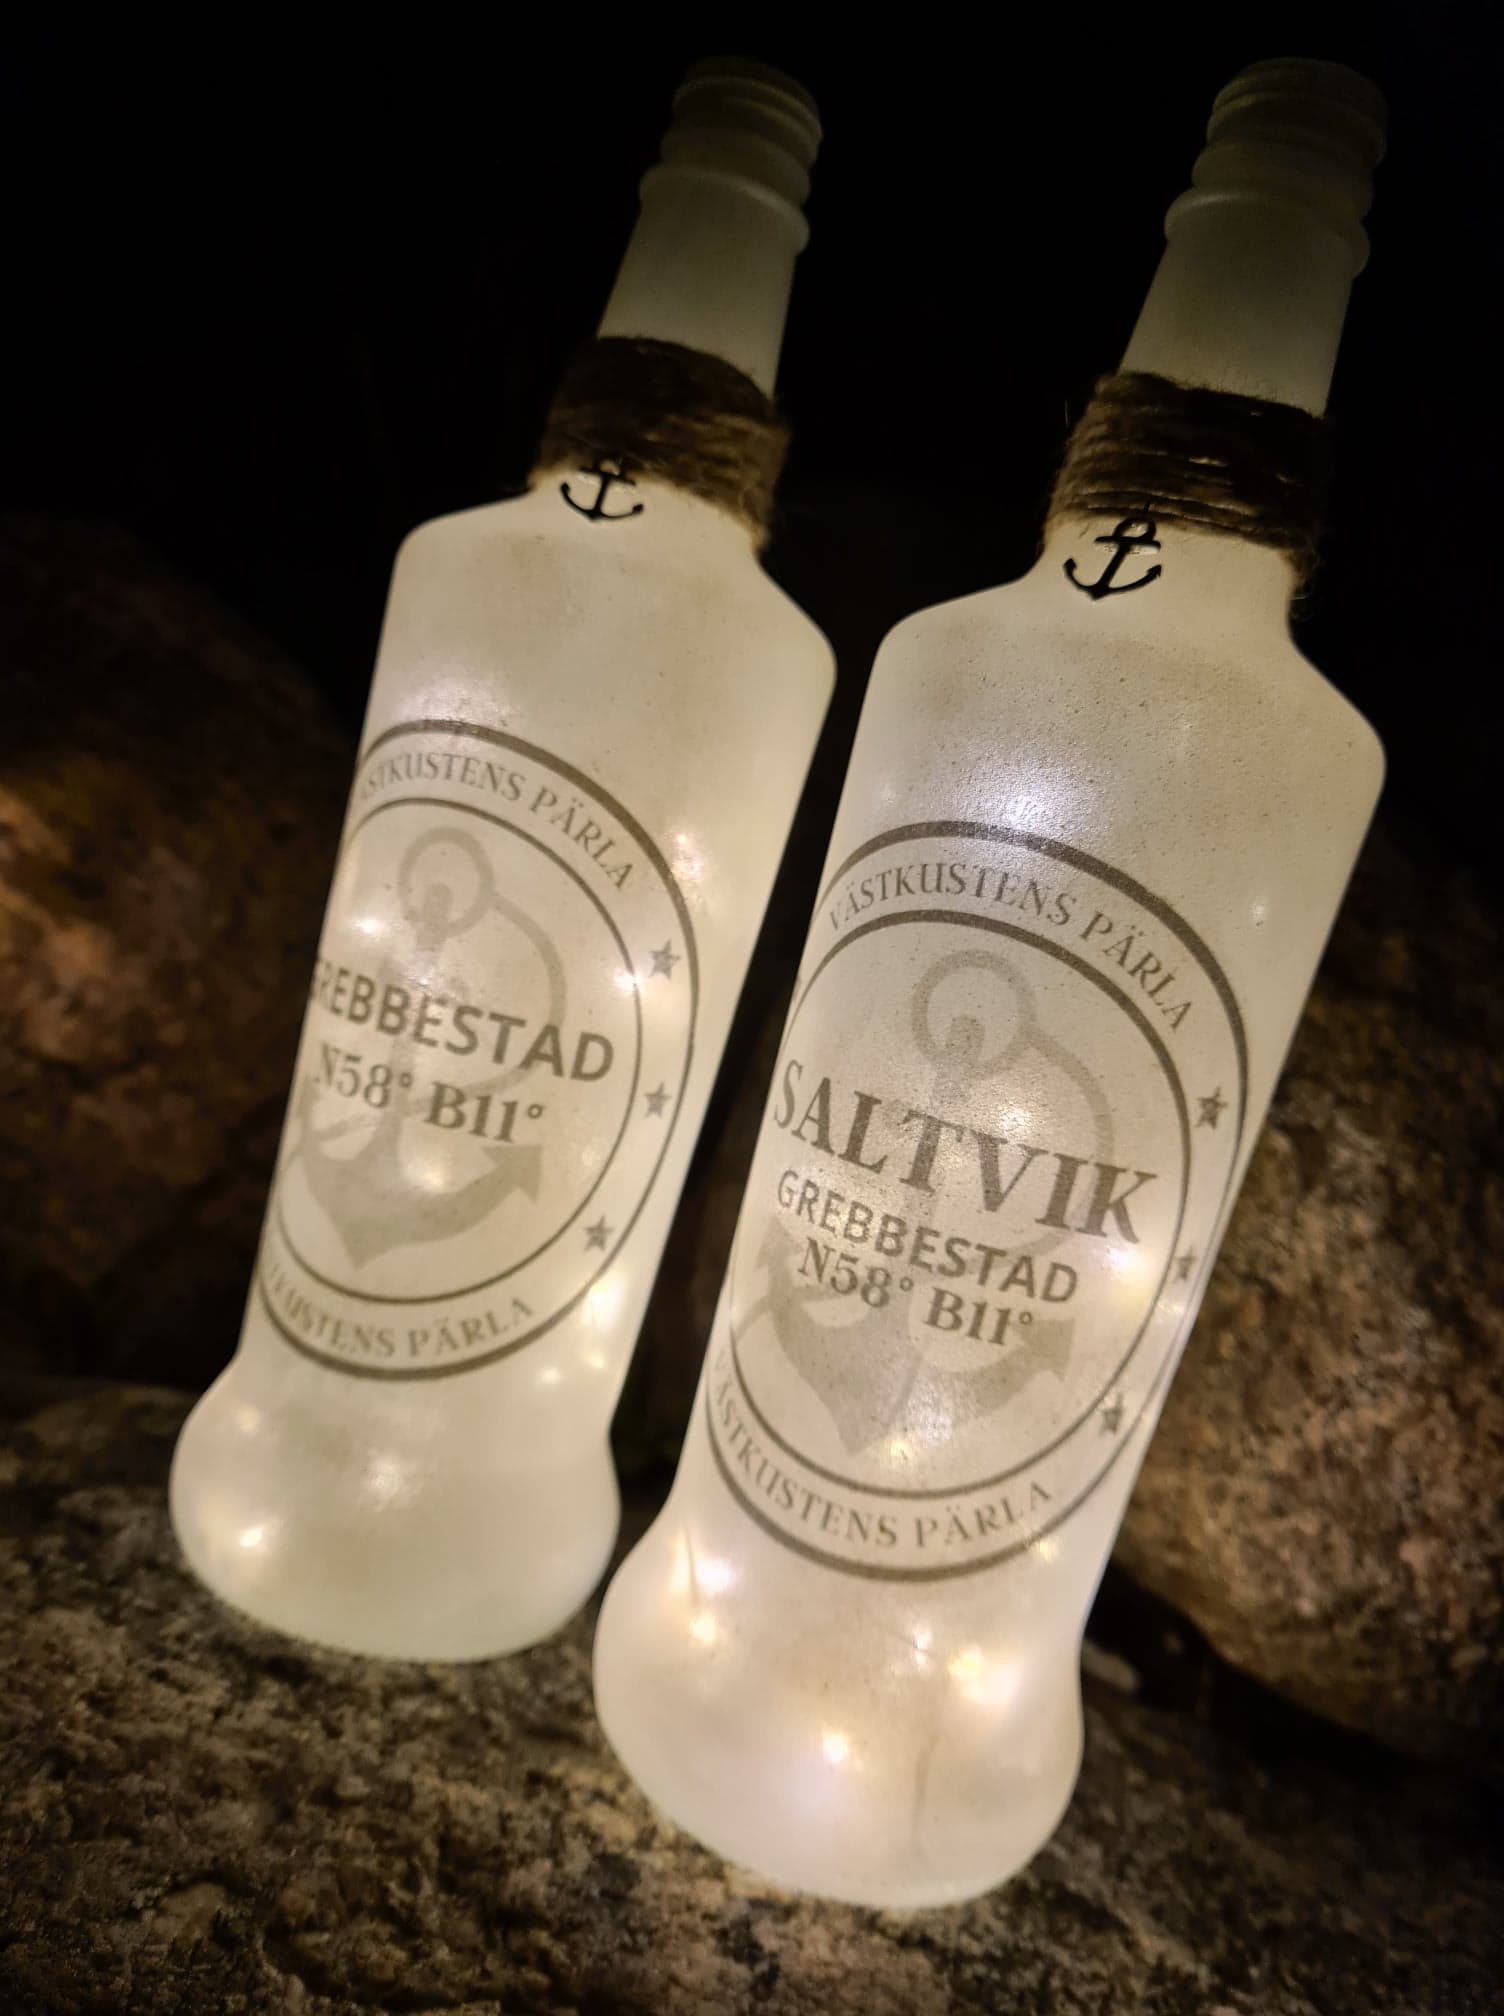 Flaska med belysning Saltvik Grebbestad